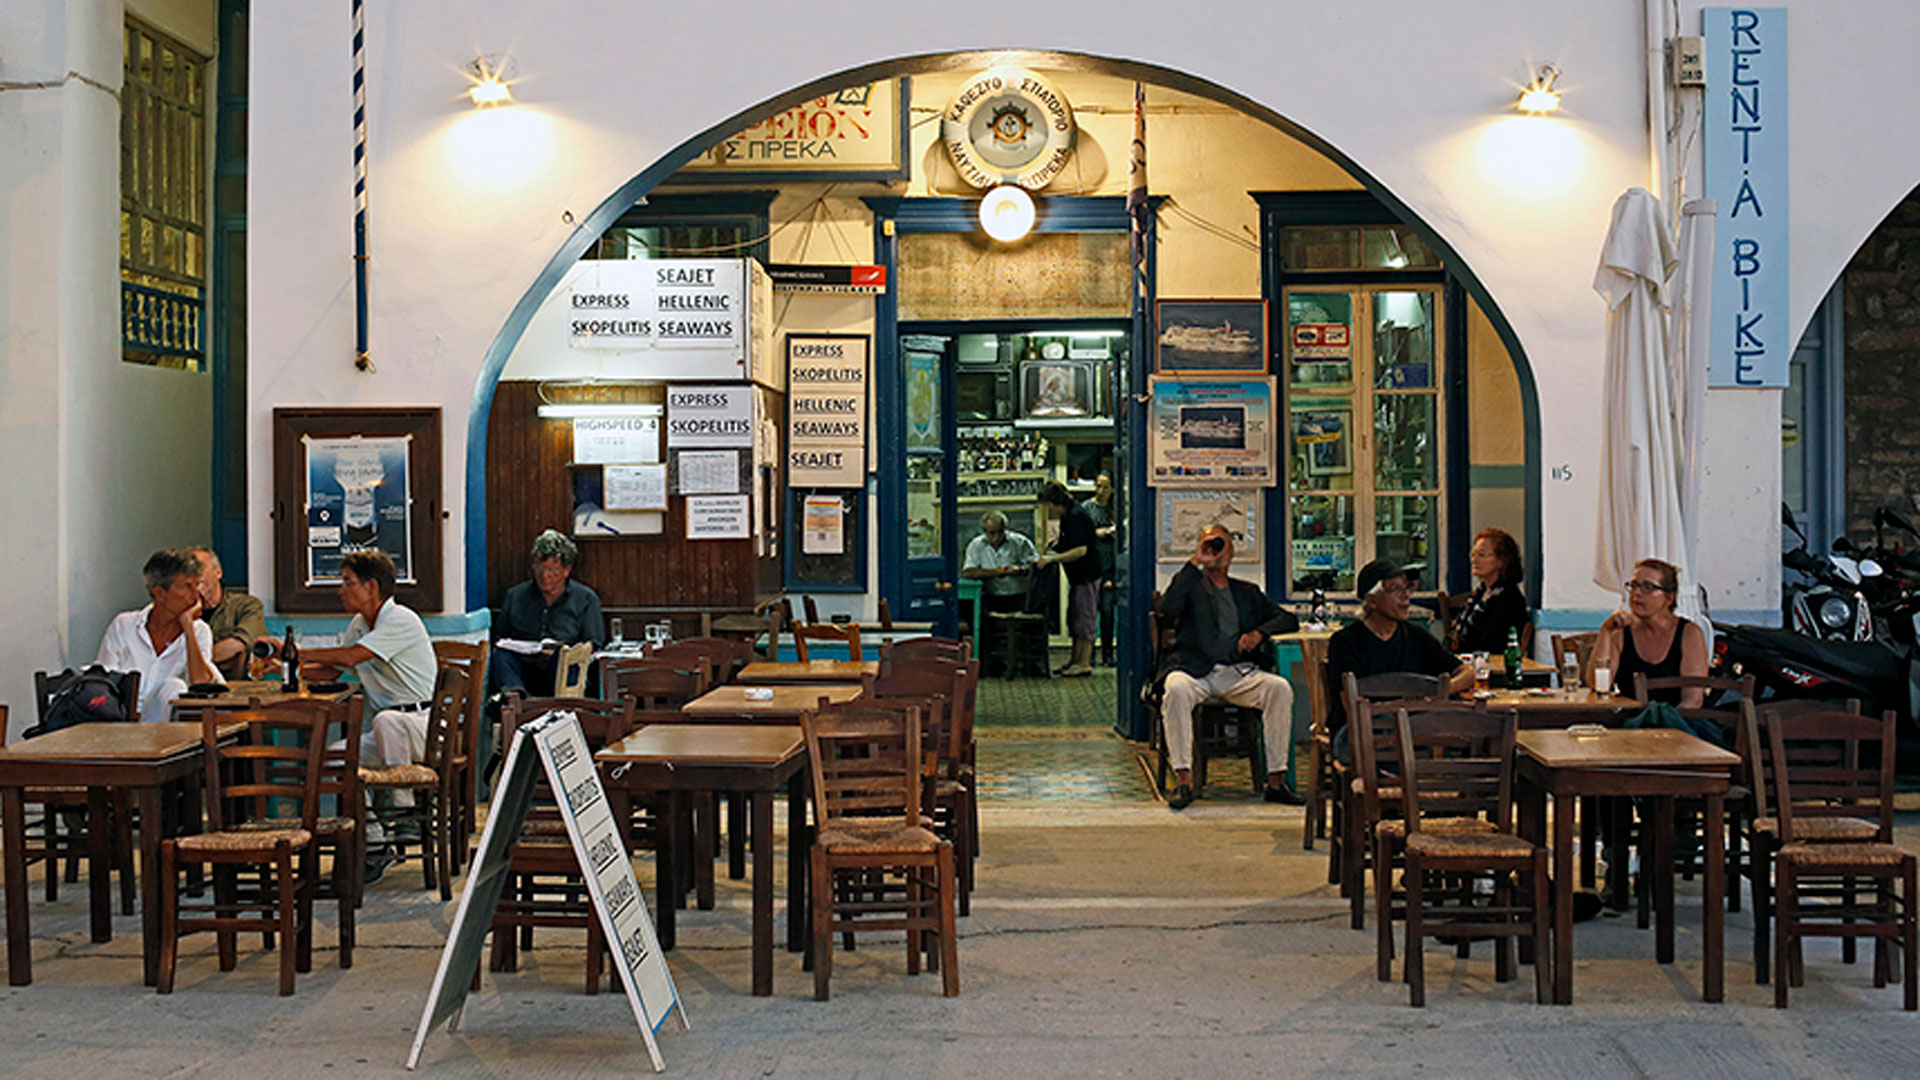 Ο Πρέκας στην Αμοργό, καφενείο και πρακτορείο εισιτηρίων μαζί